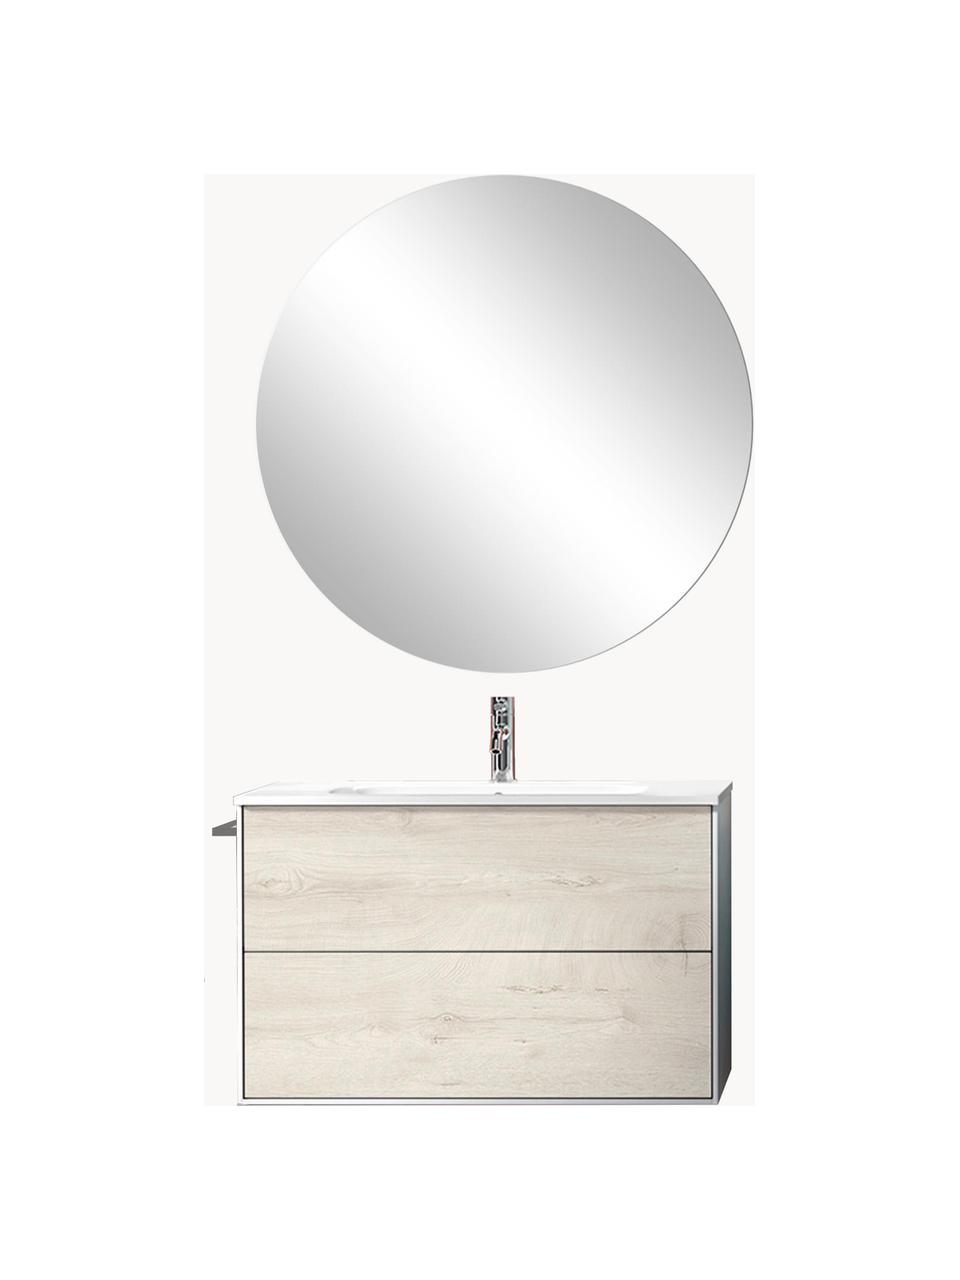 Waschtisch-Set Ago, 4-tlg., Spiegelfläche: Spiegelglas, Rückseite: ABS-Kunststoff, Eichenholz-Optik, Weiss, B 81 x H 190 cm